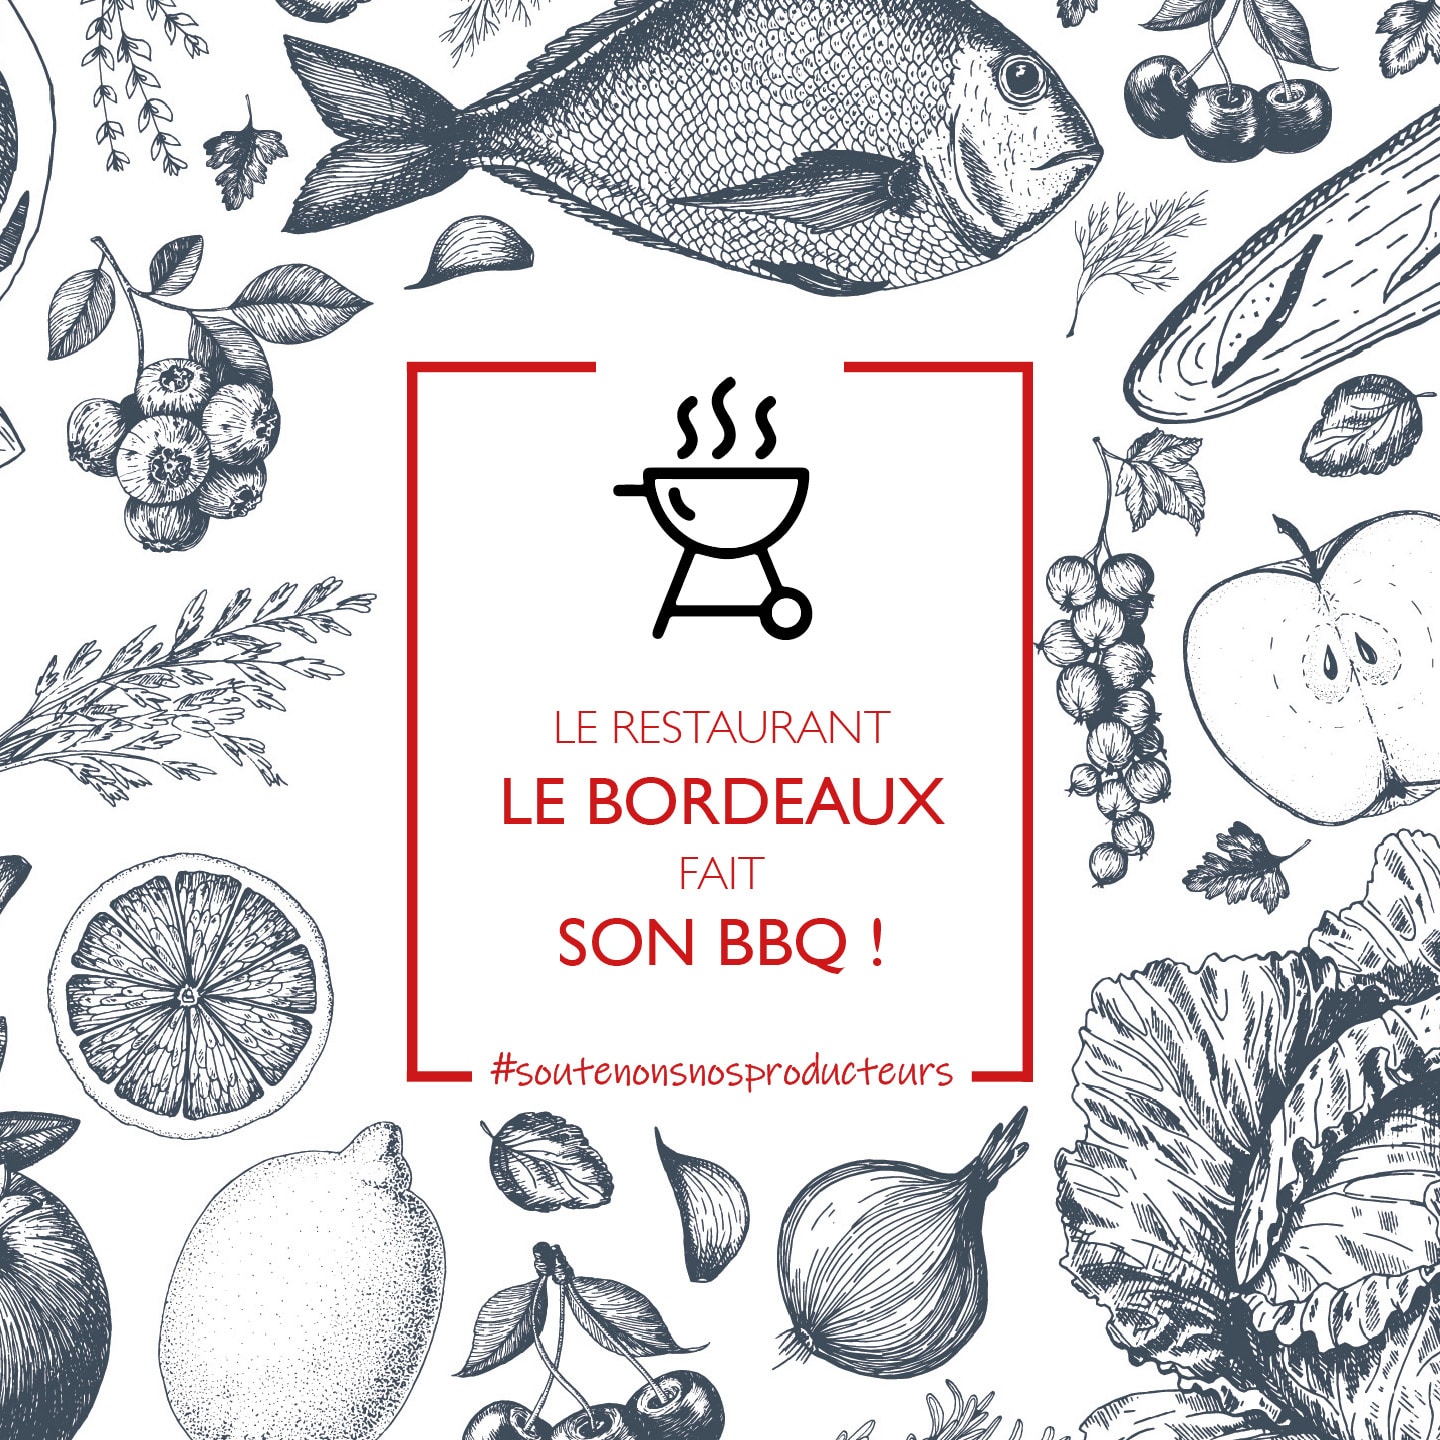 Le restaurant Le Bordeaux fait son BBQ!